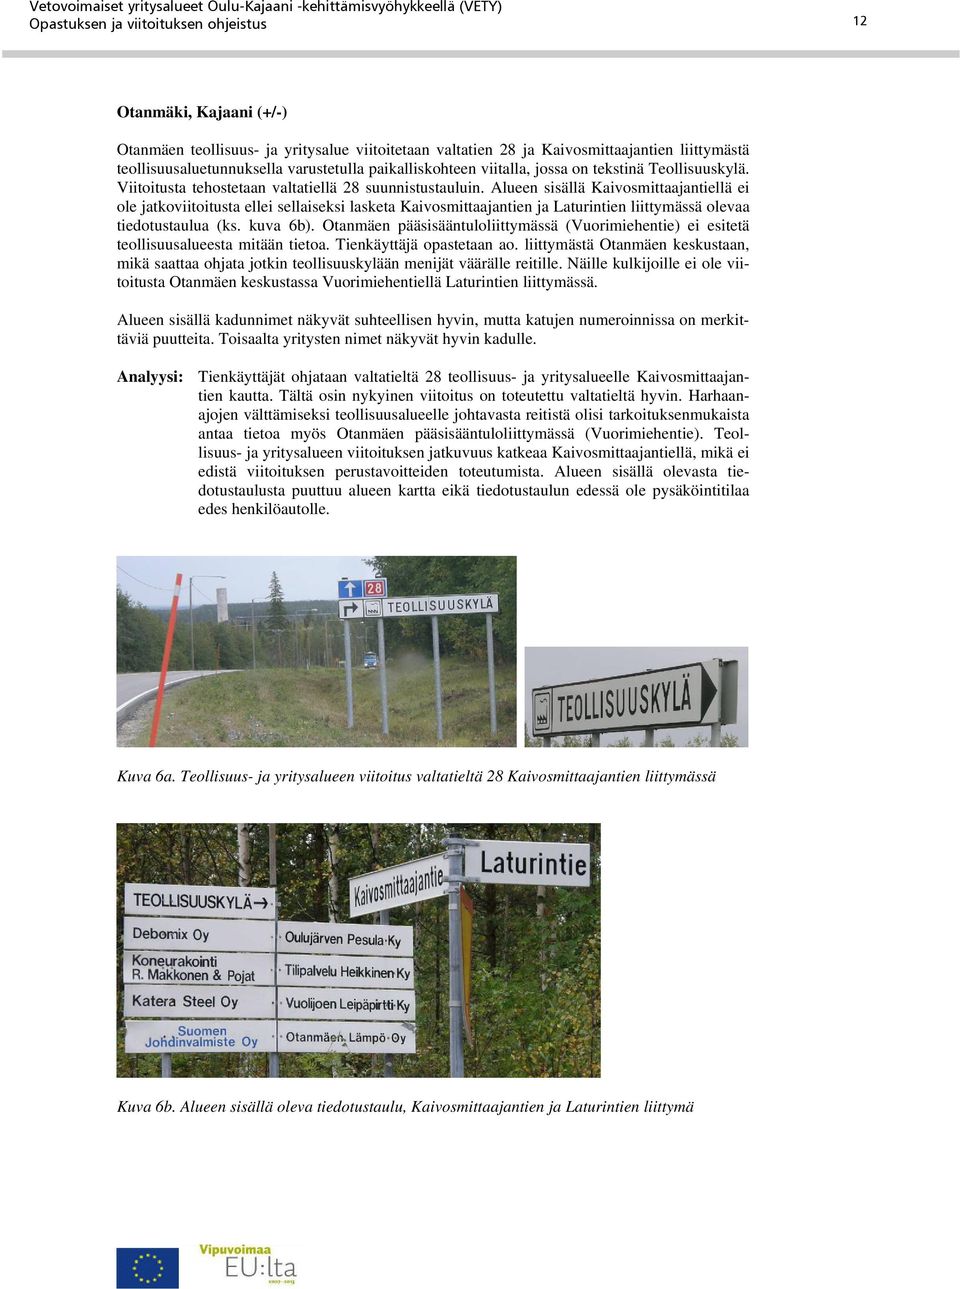 Alueen sisällä Kaivosmittaajantiellä ei ole jatkoviitoitusta ellei sellaiseksi lasketa Kaivosmittaajantien ja Laturintien liittymässä olevaa tiedotustaulua (ks. kuva 6b).